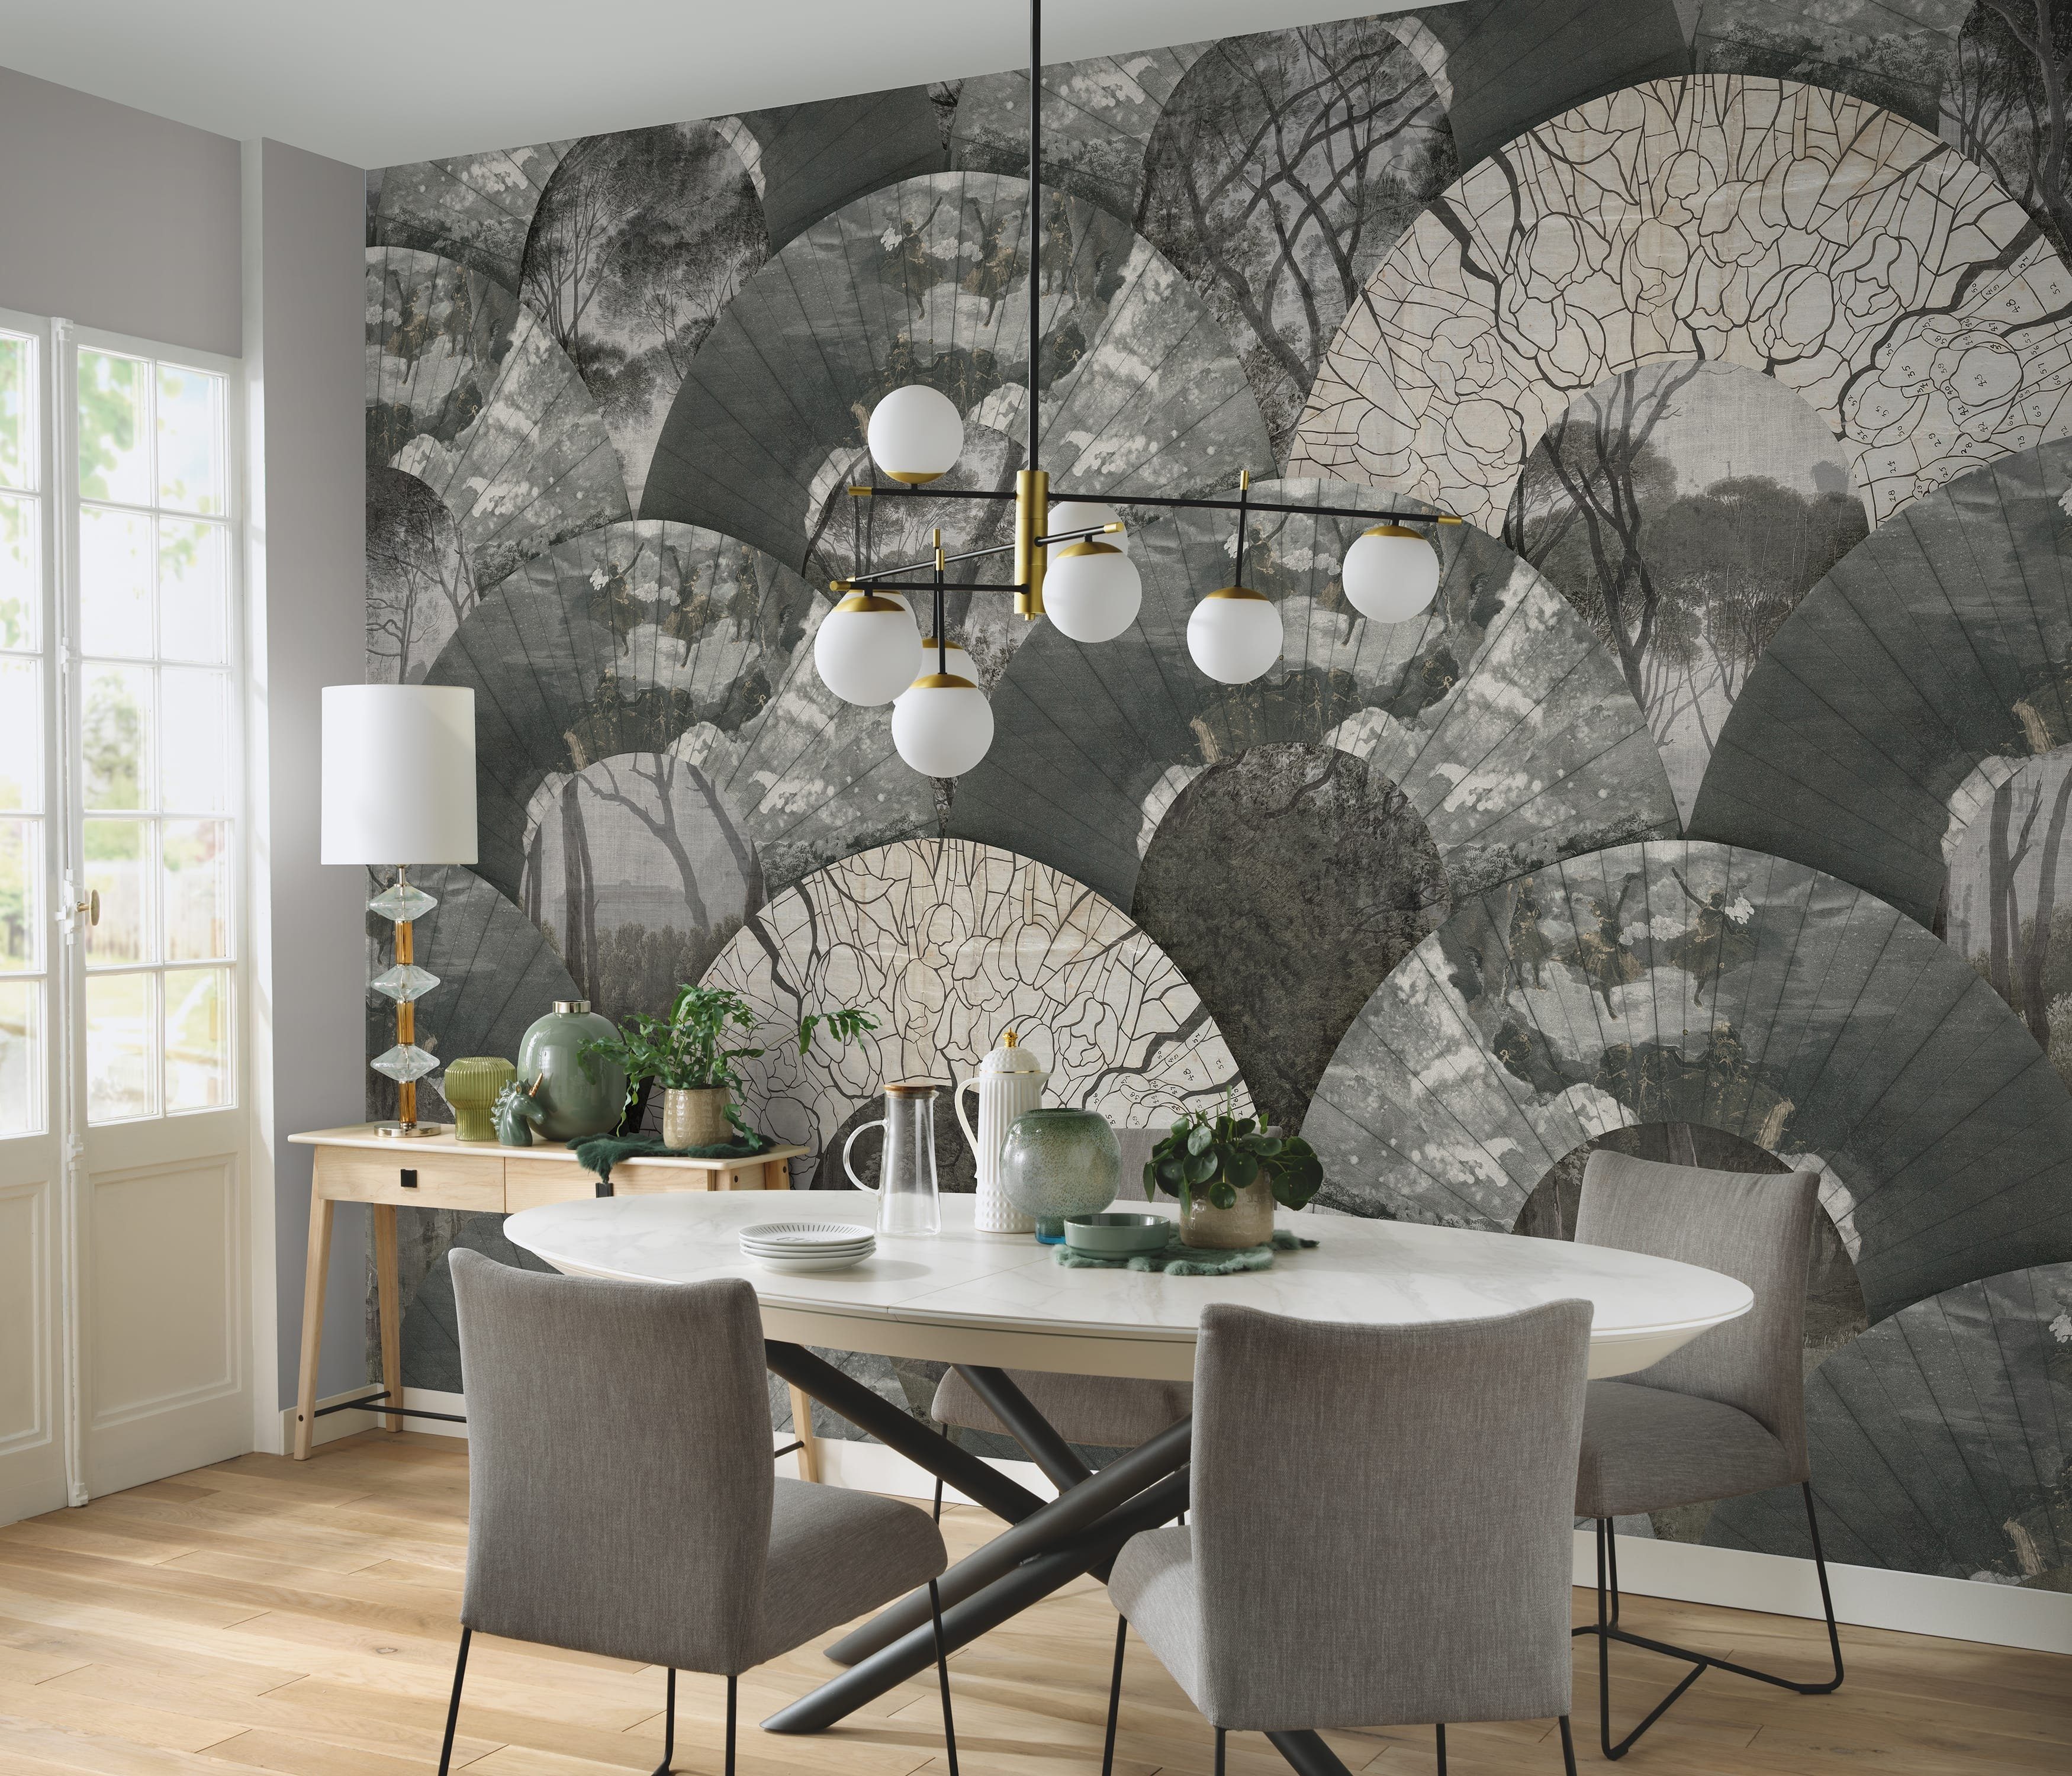 Newroom Vliestapete, [ 4,5 x 2,7 m ] großzügiges Motiv - kein wiederkehrendes Muster - Fototapete Wandbild Halbkreise Baumstämme Bäume Made in Germany